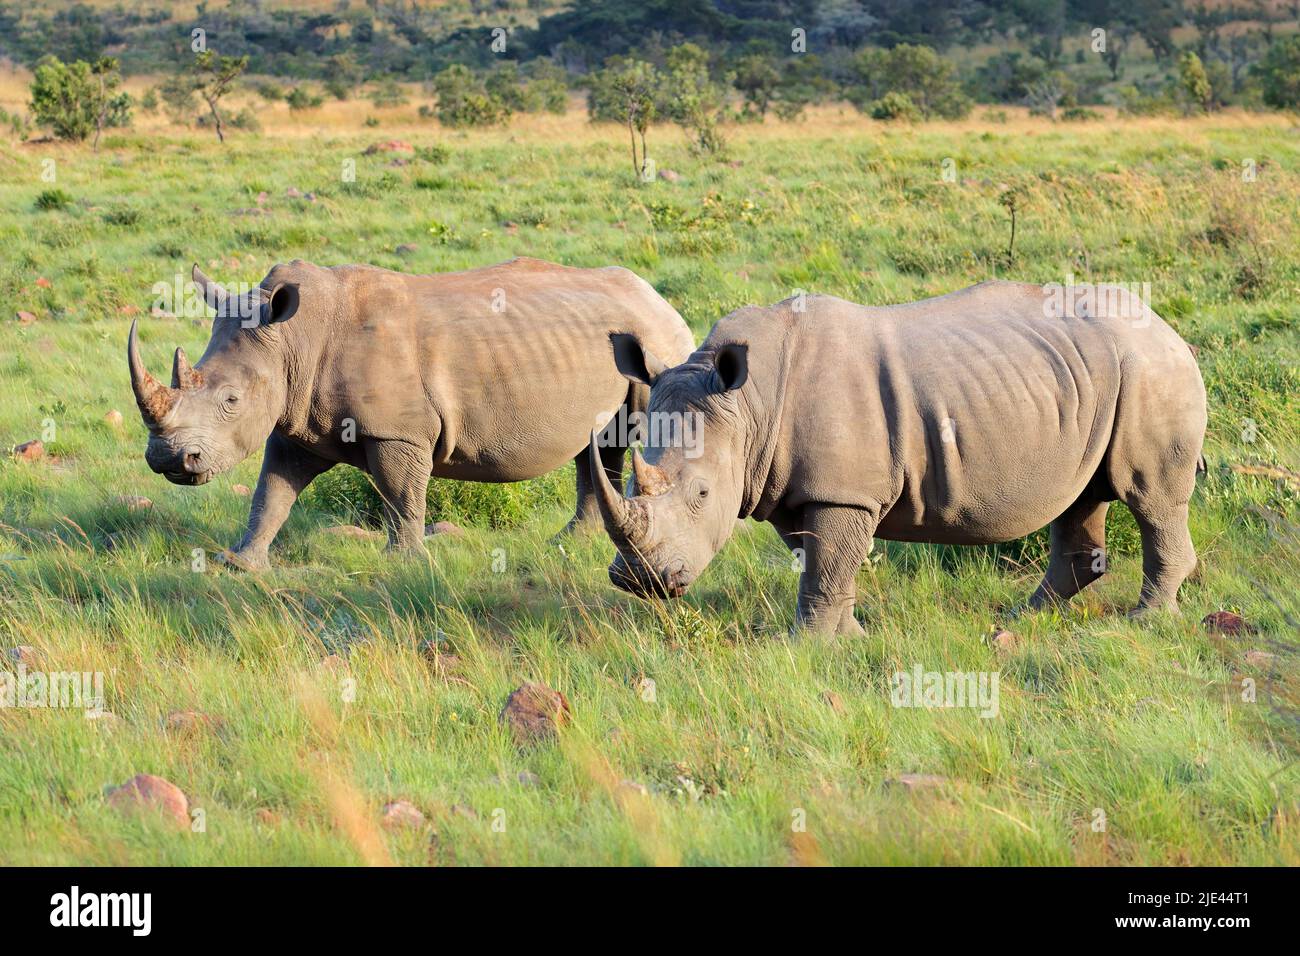 Endangered white rhinoceros (Ceratotherium simum) pair in natural habitat, South Africa Stock Photo